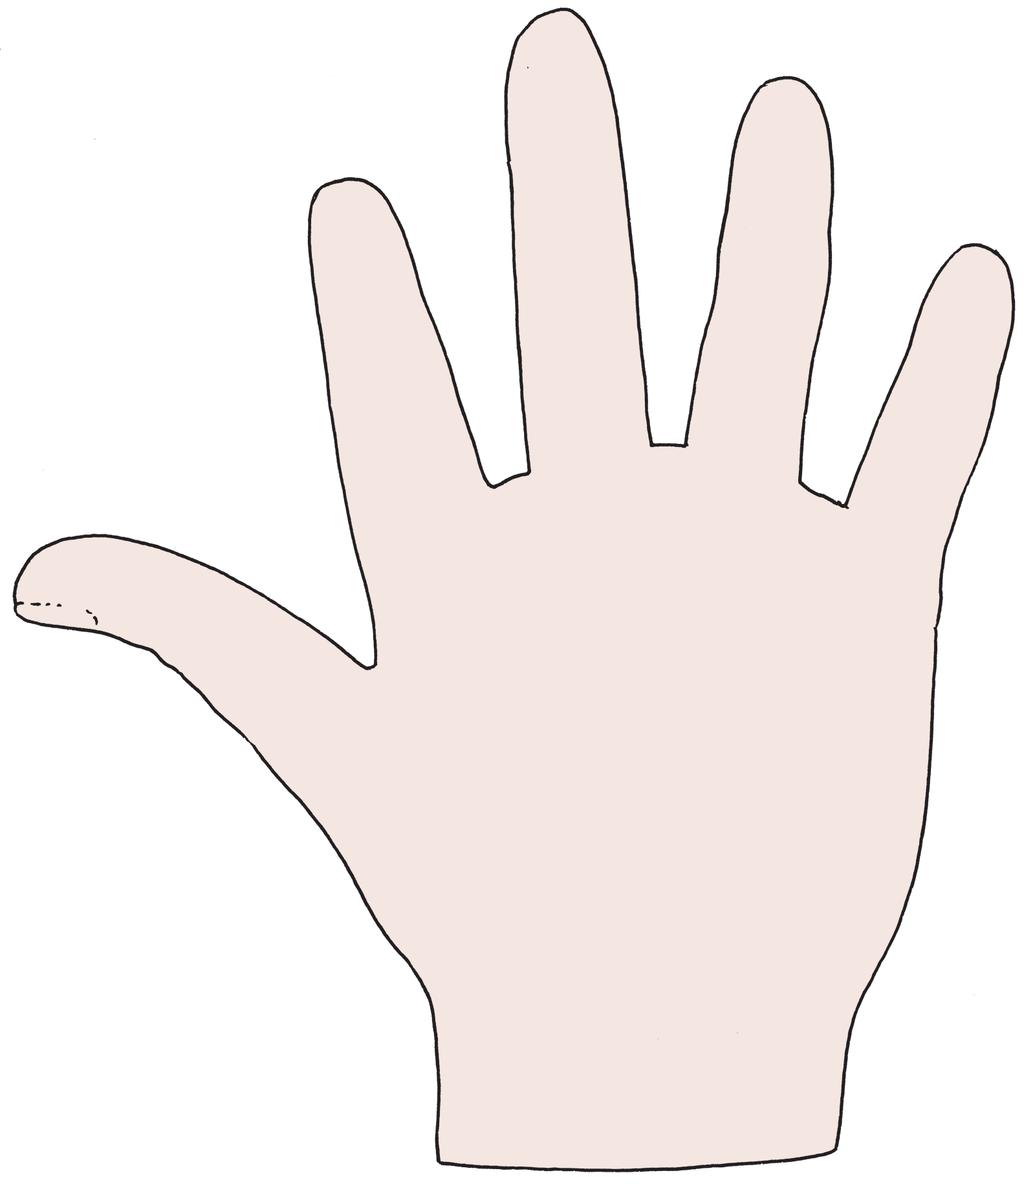 Arbeitsblatt 15: Inhaltsangabe Wenn du eine Inhaltsangabe schreiben möchtest, hilft dir die Fünf-Finger-Methode: Schreibe zu jeder Fingerfrage einige Stichworte auf!